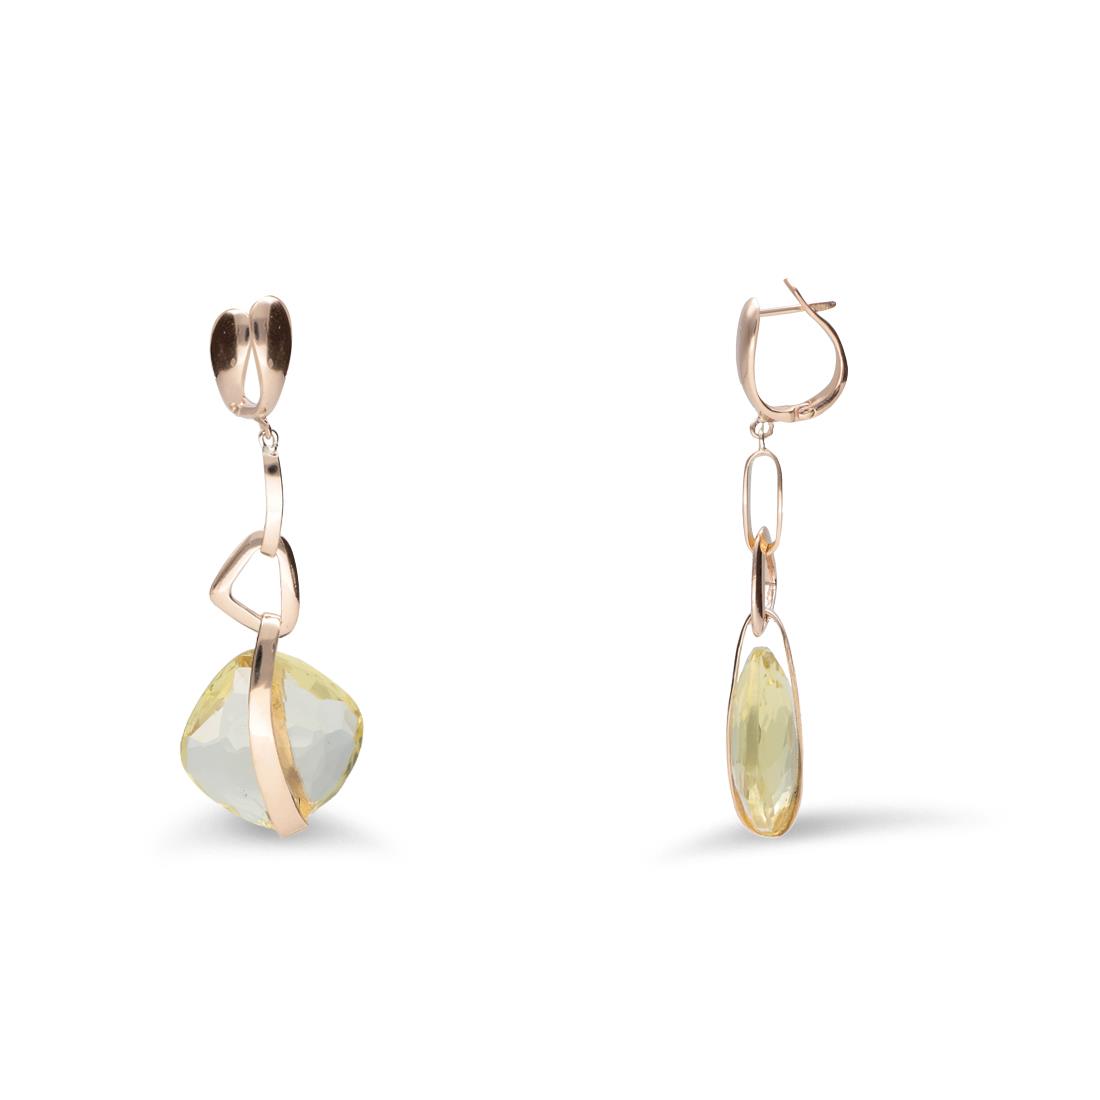 Rose gold pendant earrings with lemon quartz - STANOPPI